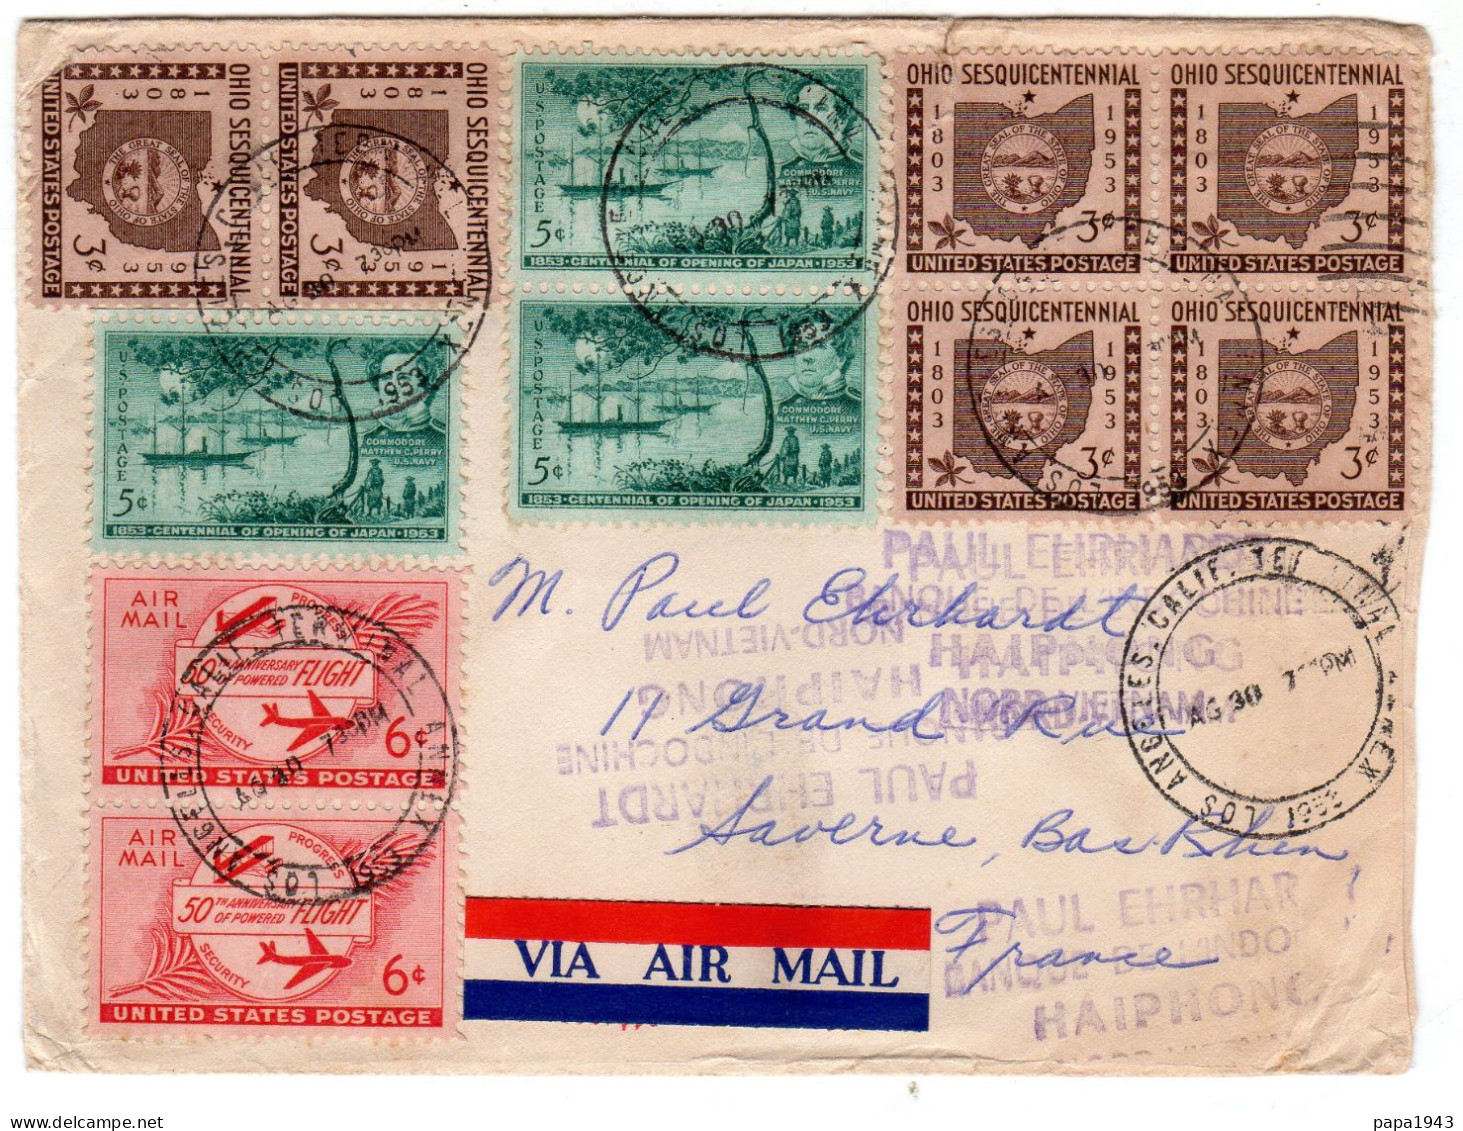 1930  Lettre De LOS ANGELES  Envoyée à SAVERNE  67 - Lettres & Documents